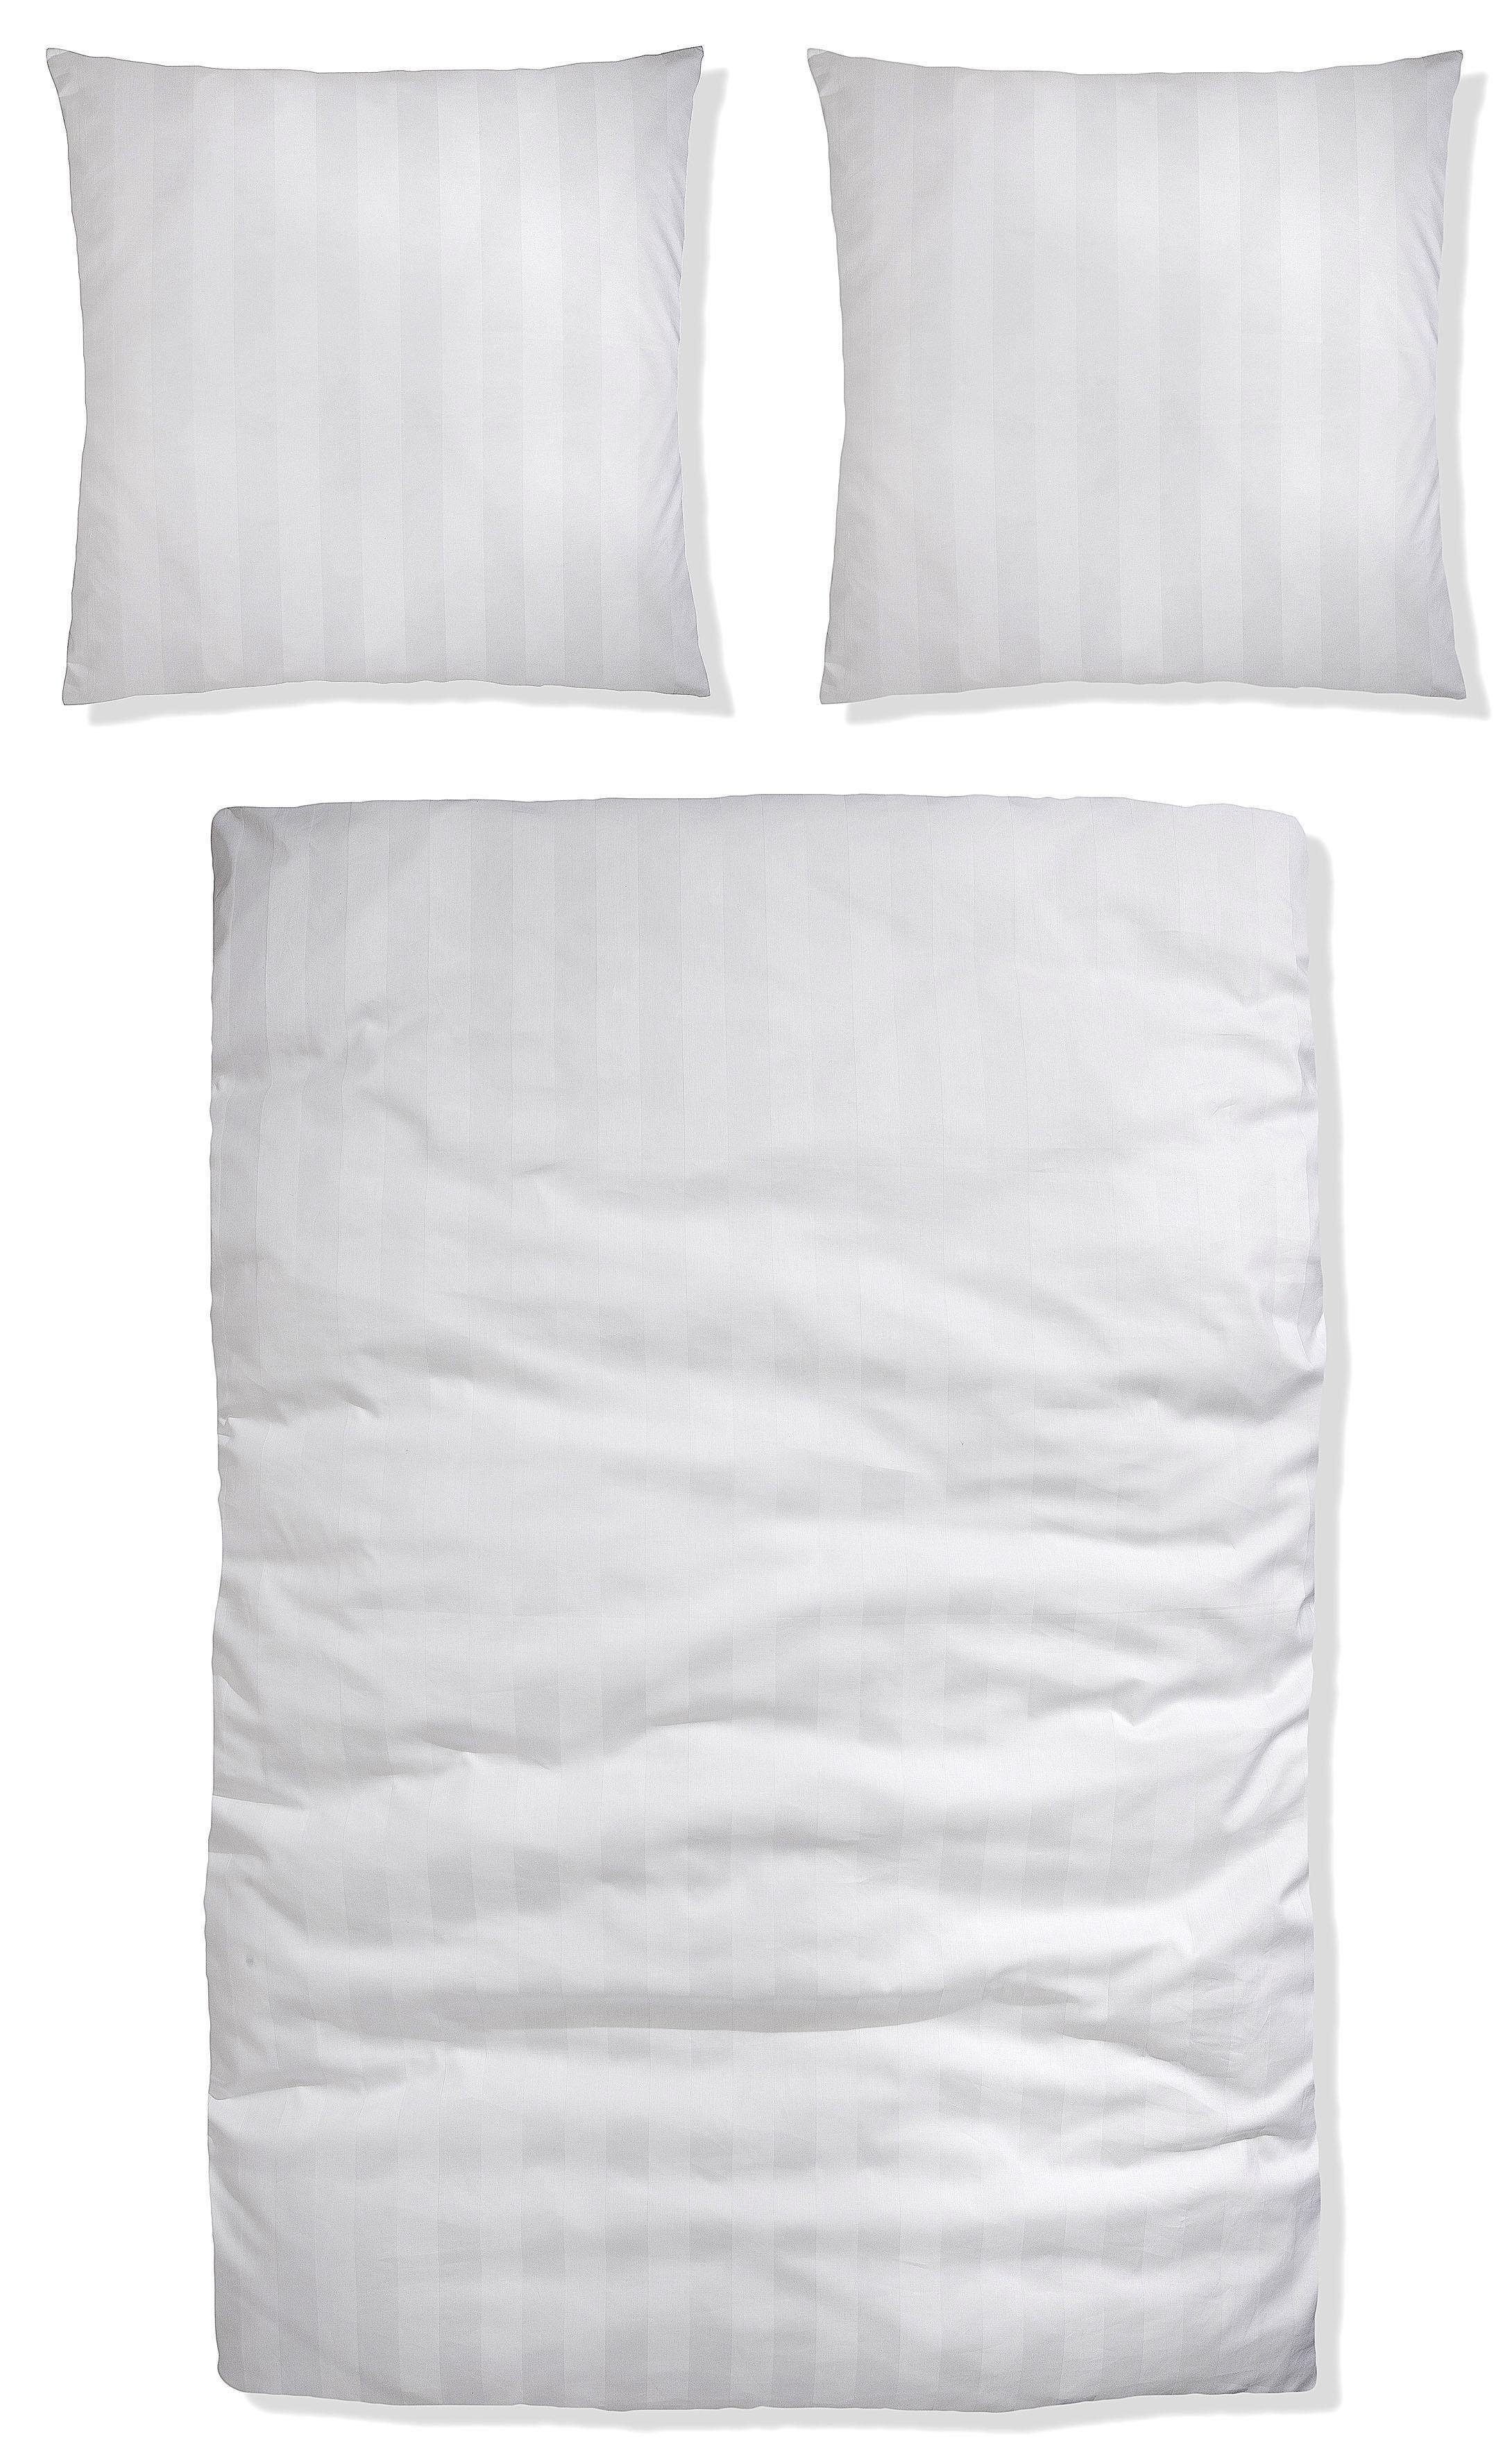 Satin, Bettwäsche in Bettwäsche zeitlose Gr. cm, Satin-Qualität 155x220 2 135x200 oder in Malia weiß Baumwolle, aus teilig, Bettwäsche Leonique,